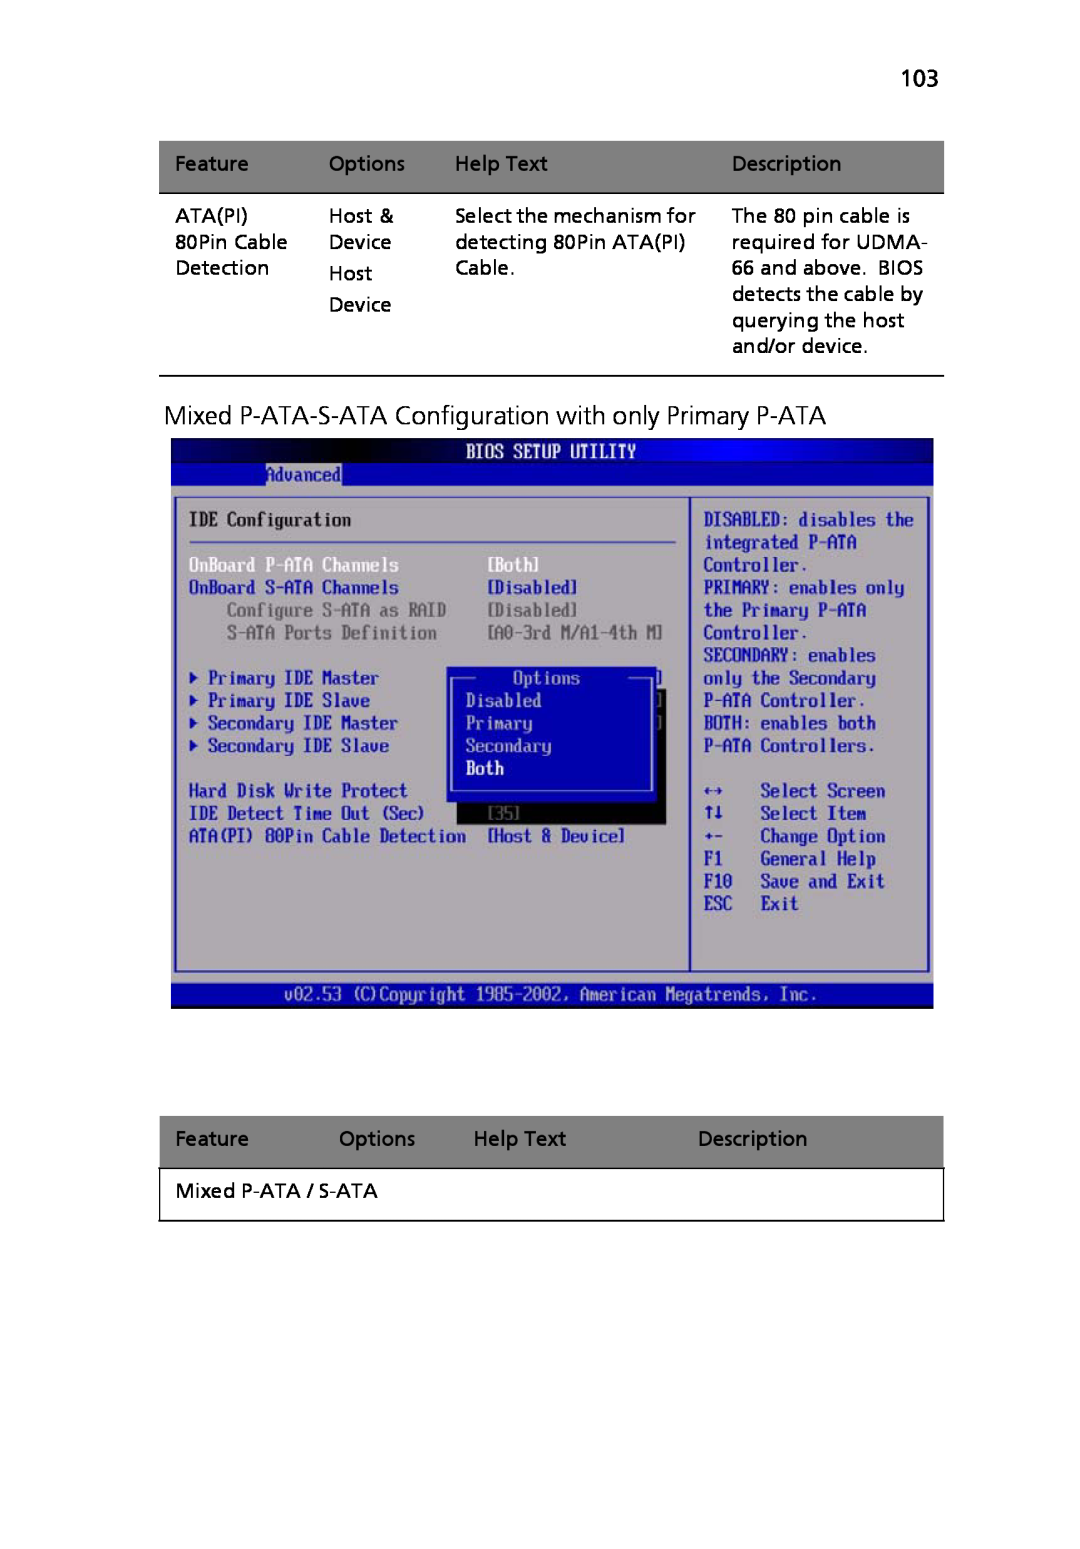 Acer Altos R710 manual Mixed P-ATA-S-ATA Configuration with only Primary P-ATA, Description 